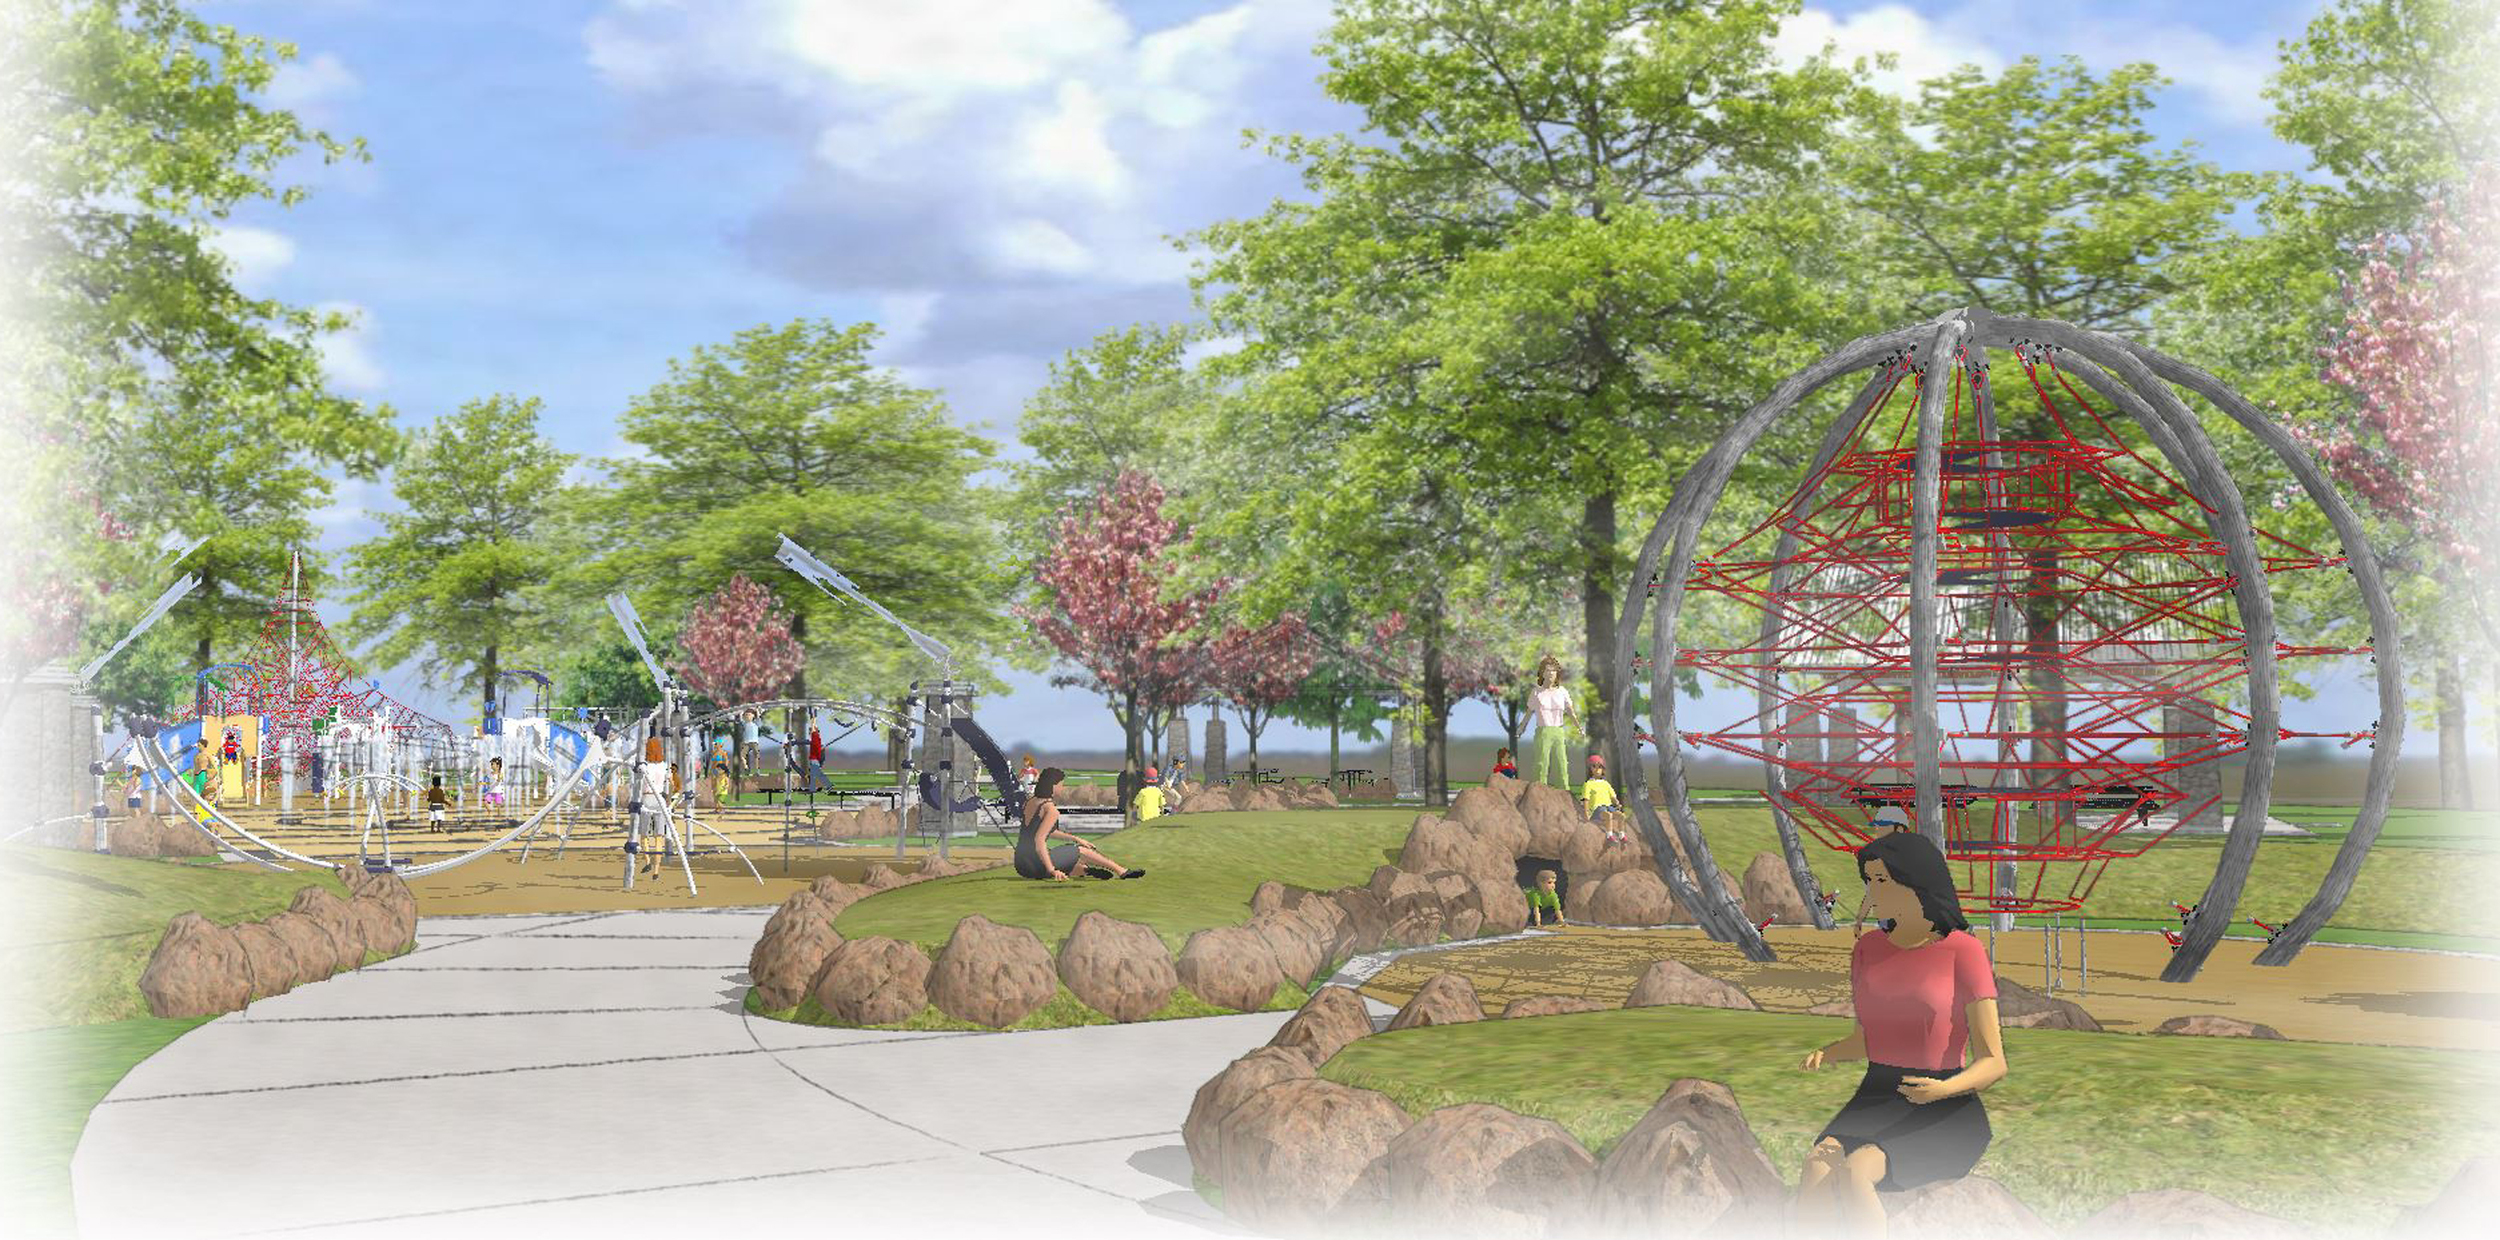 Central Park Concept Plan